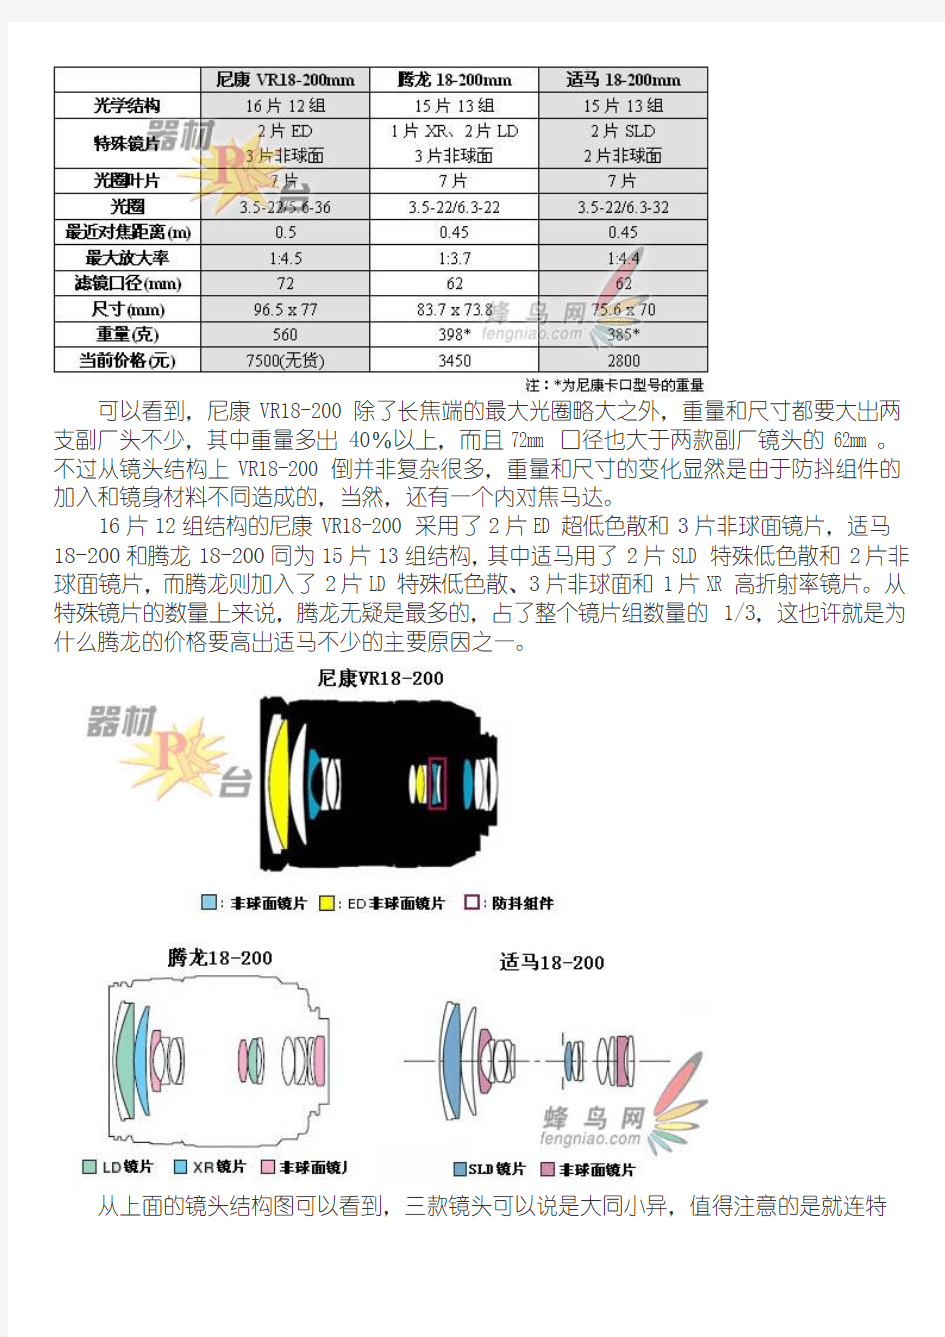 尼康VR18-200 VS 腾龙18-200 VS 适马18-200横向深入对比评测